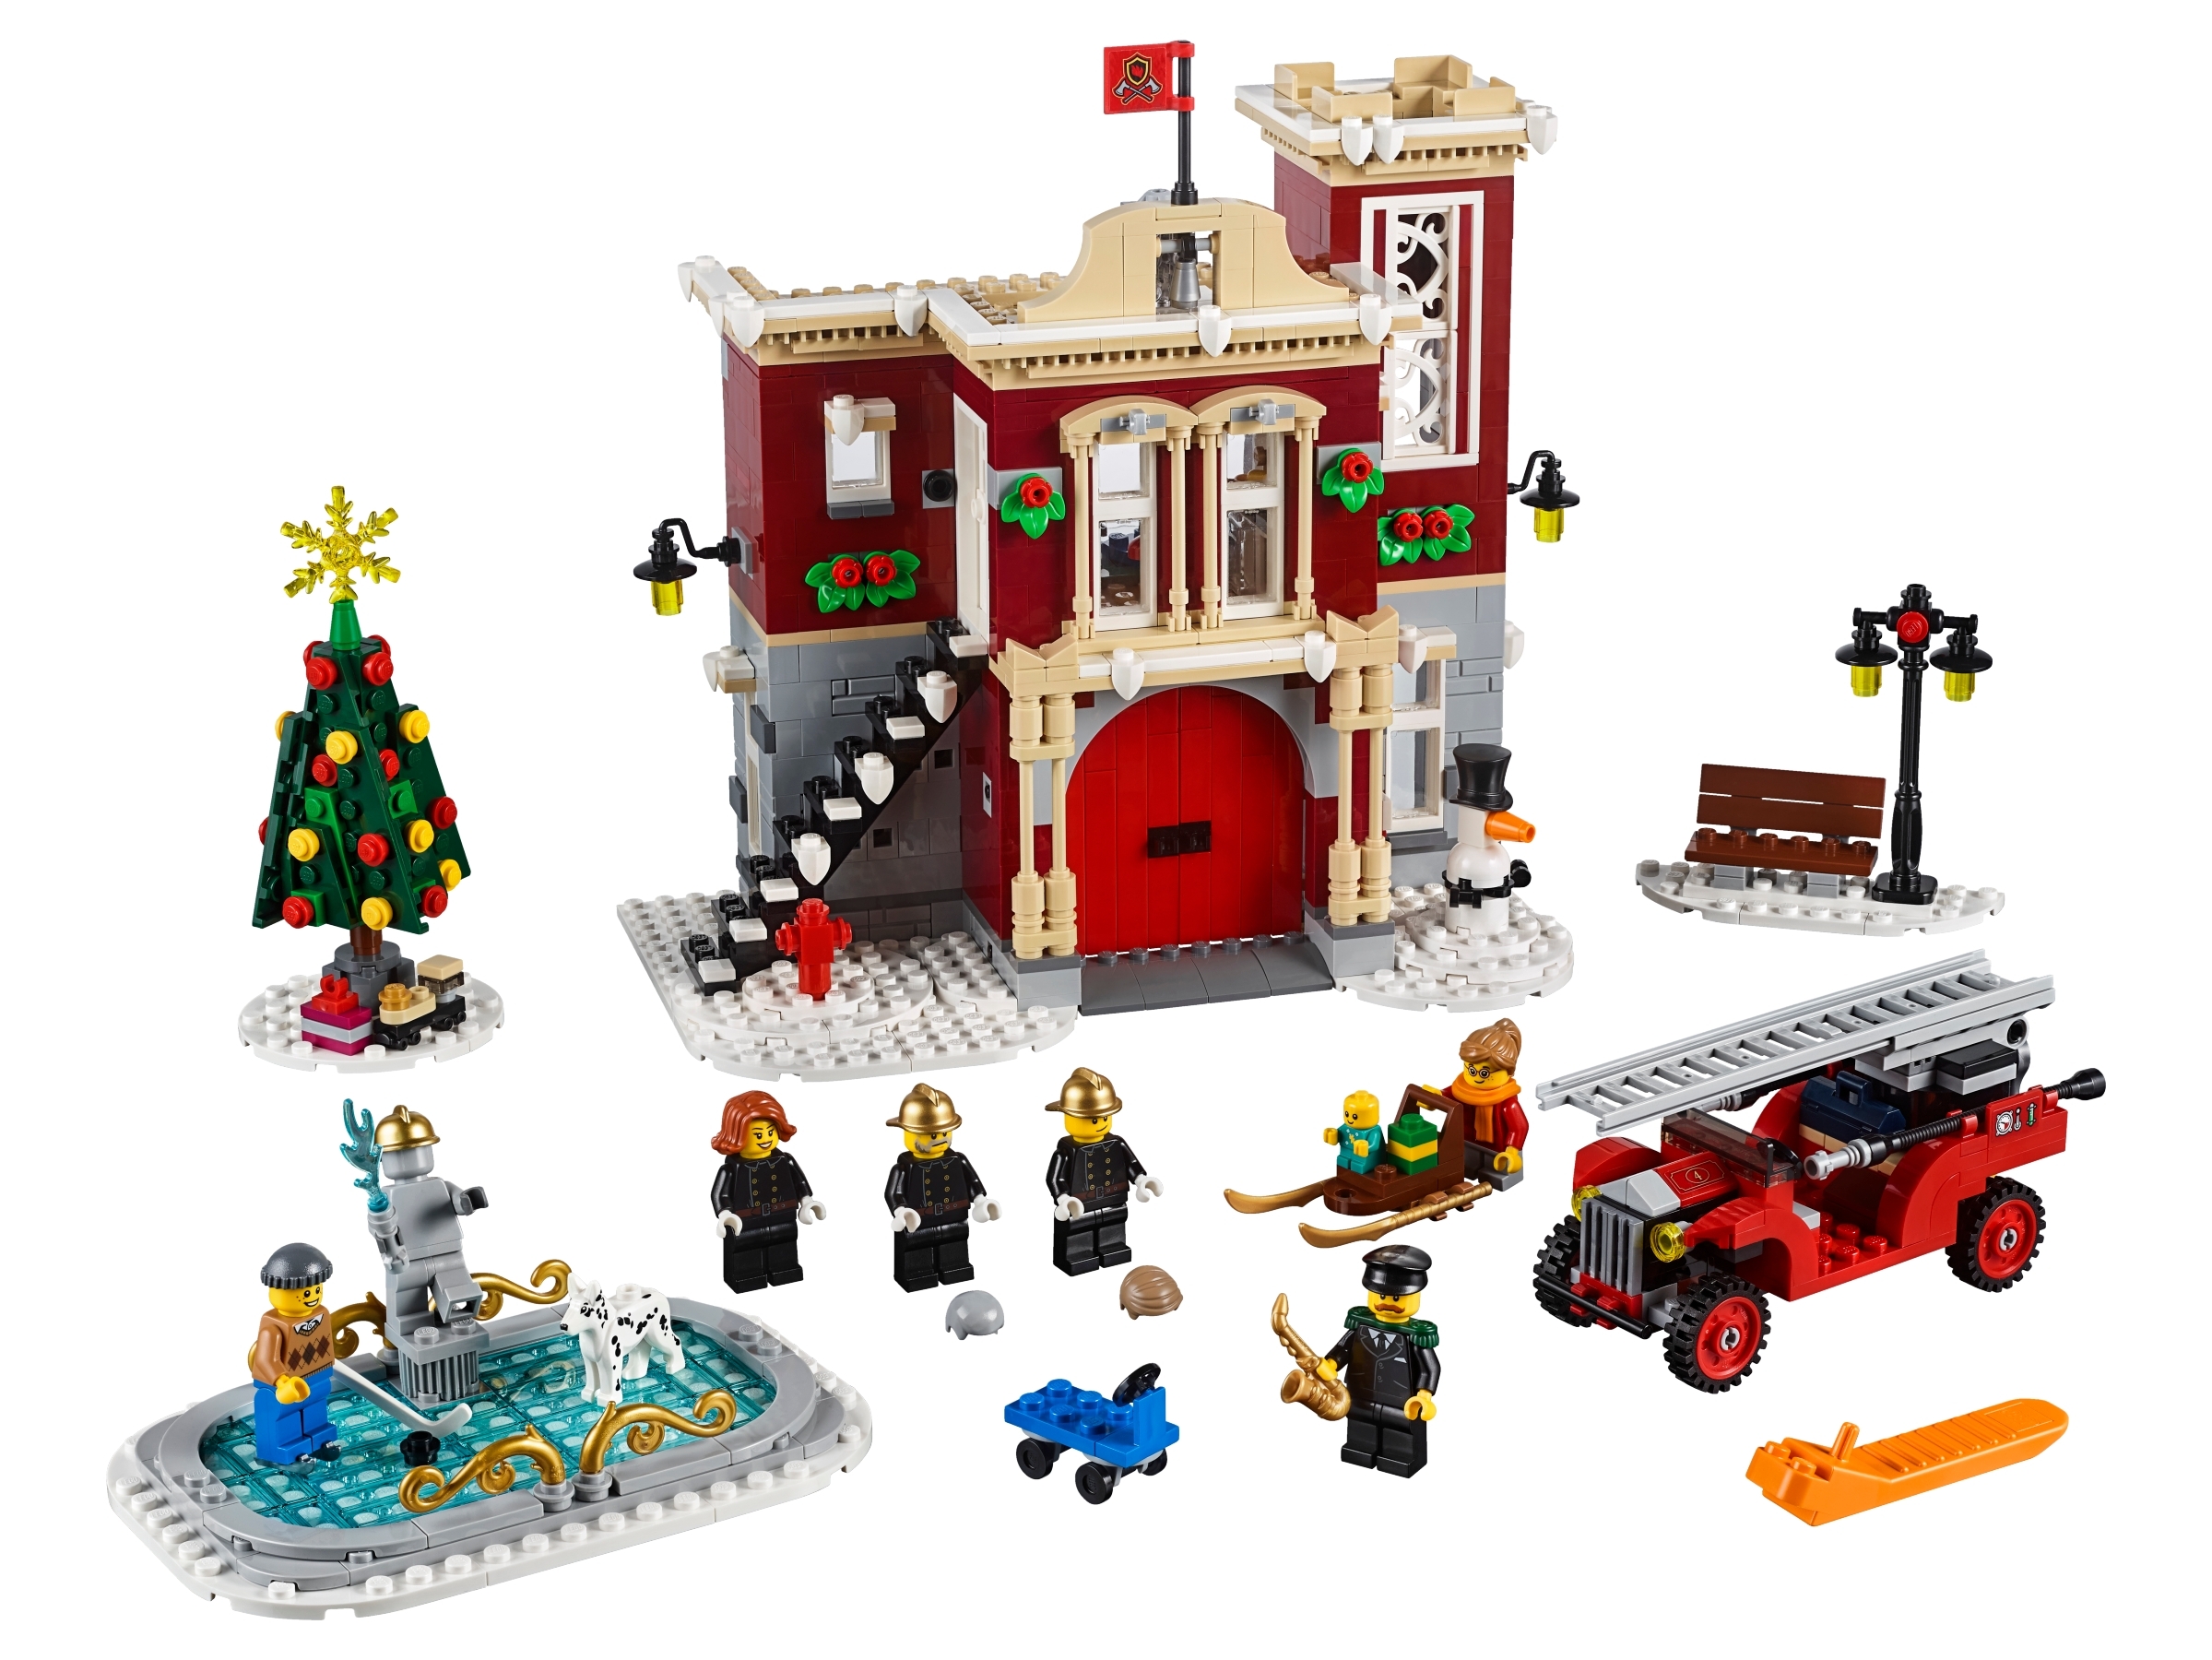 Every LEGO Winter ever made